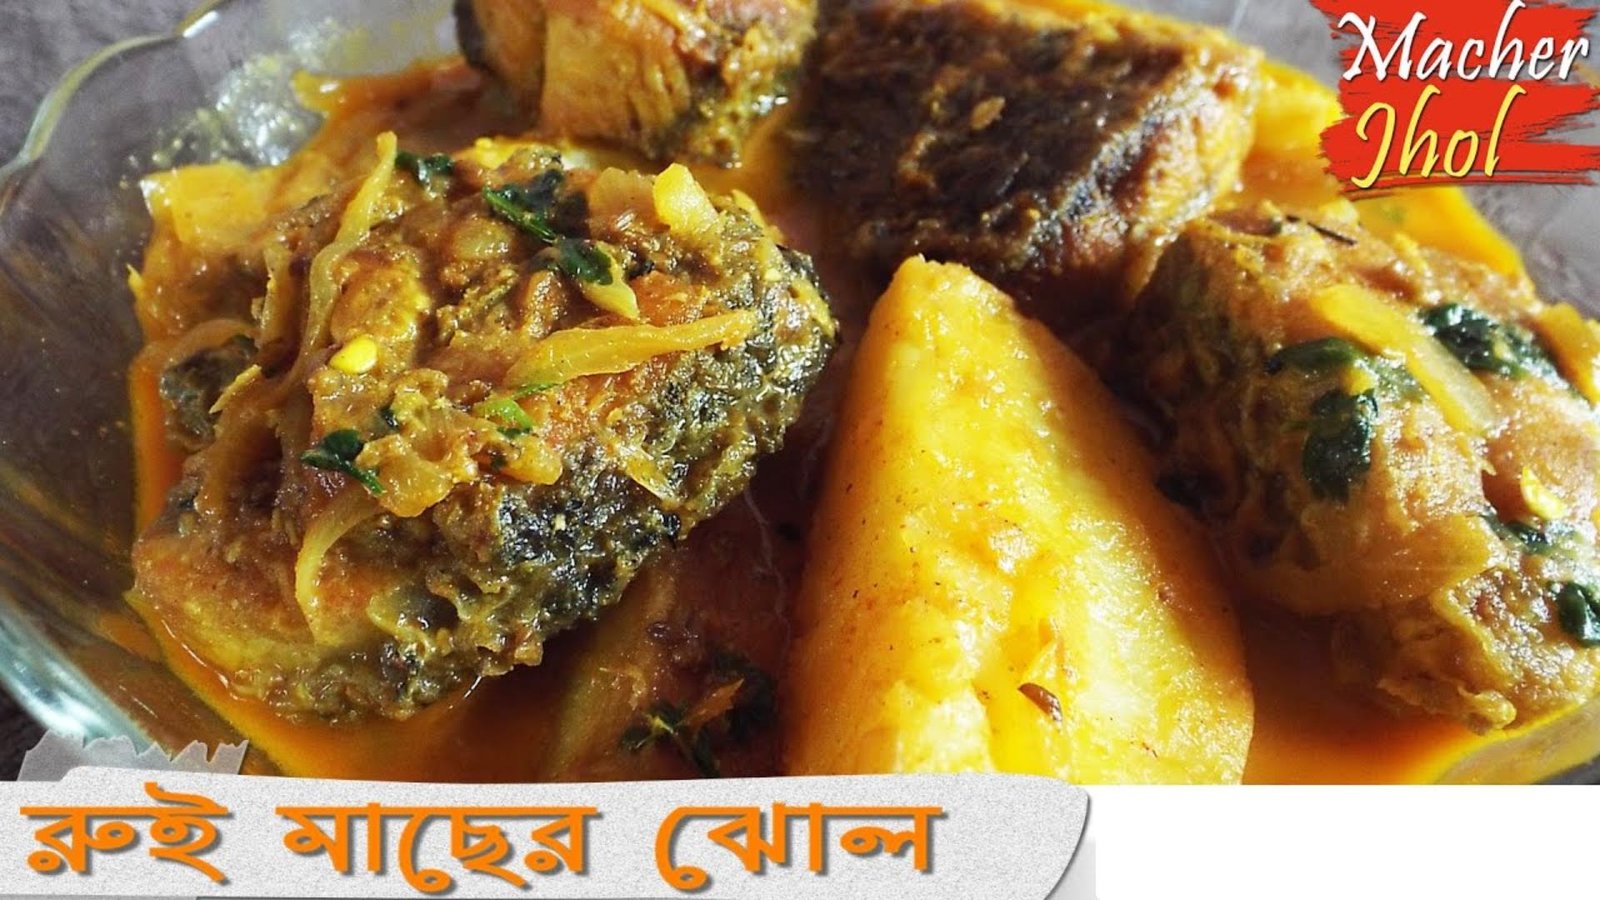 Rui macher jhol recipe - Bengali fish curry